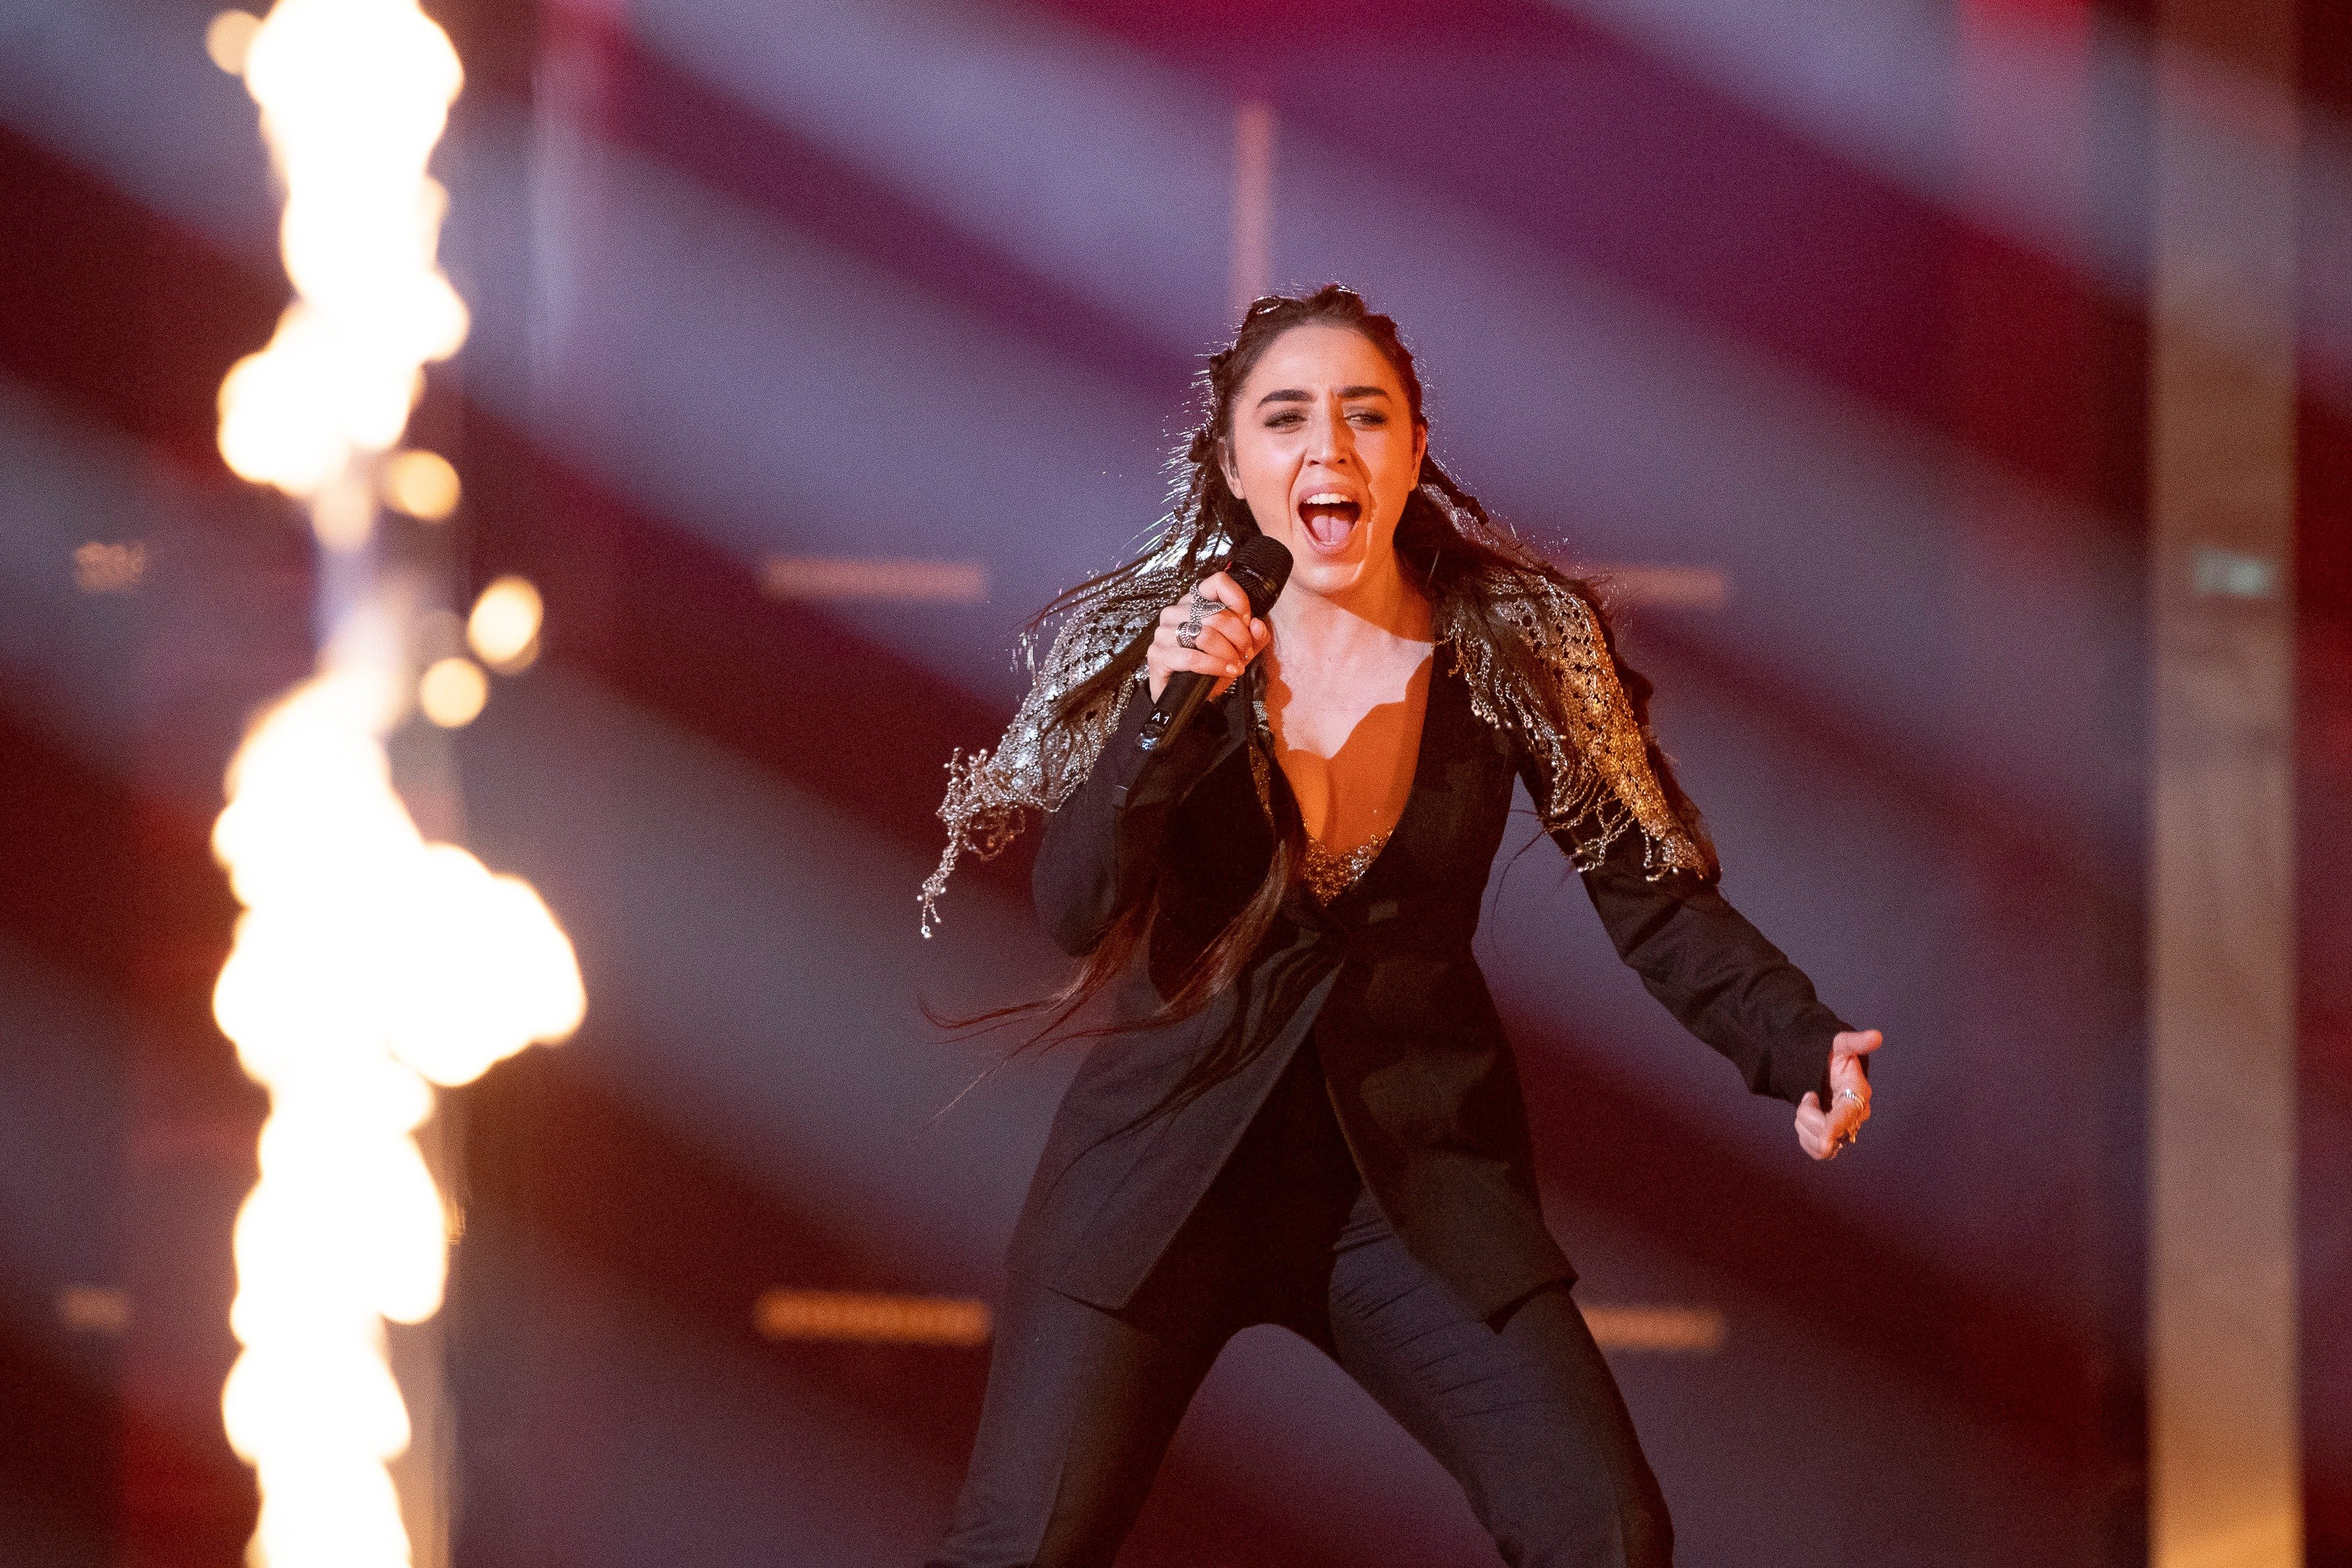 Armenia: National broadcaster AMPTV confirms Eurovision 2020 participation